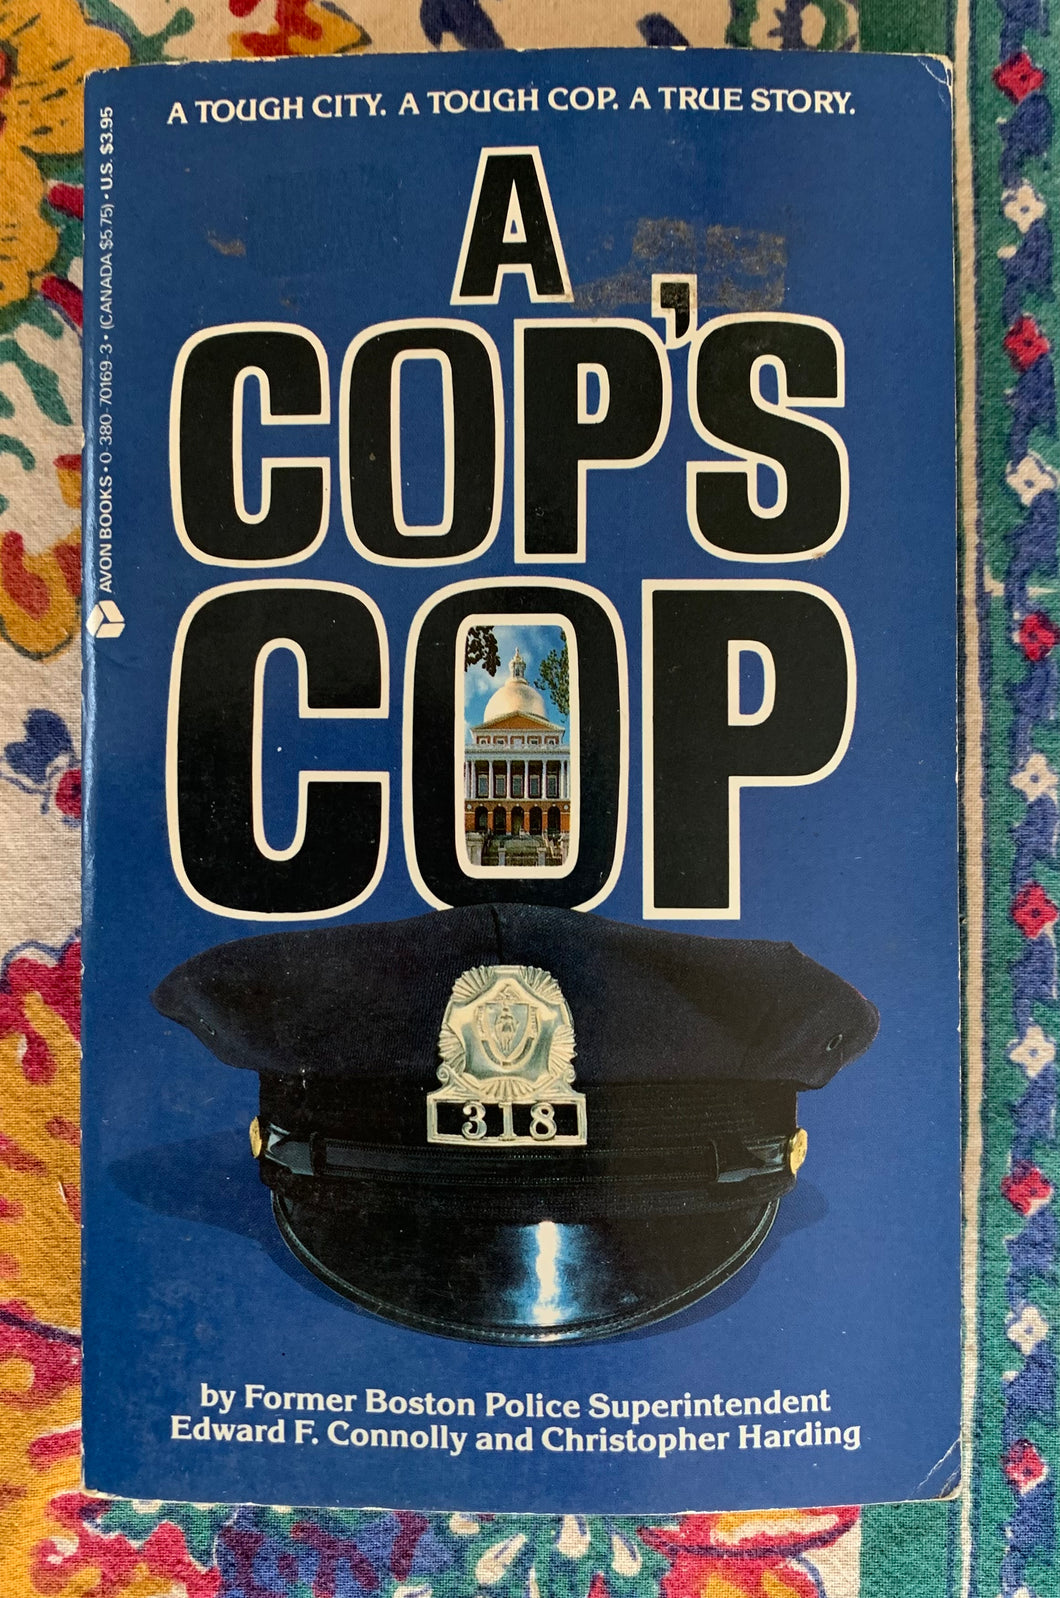 A Cop's Cop